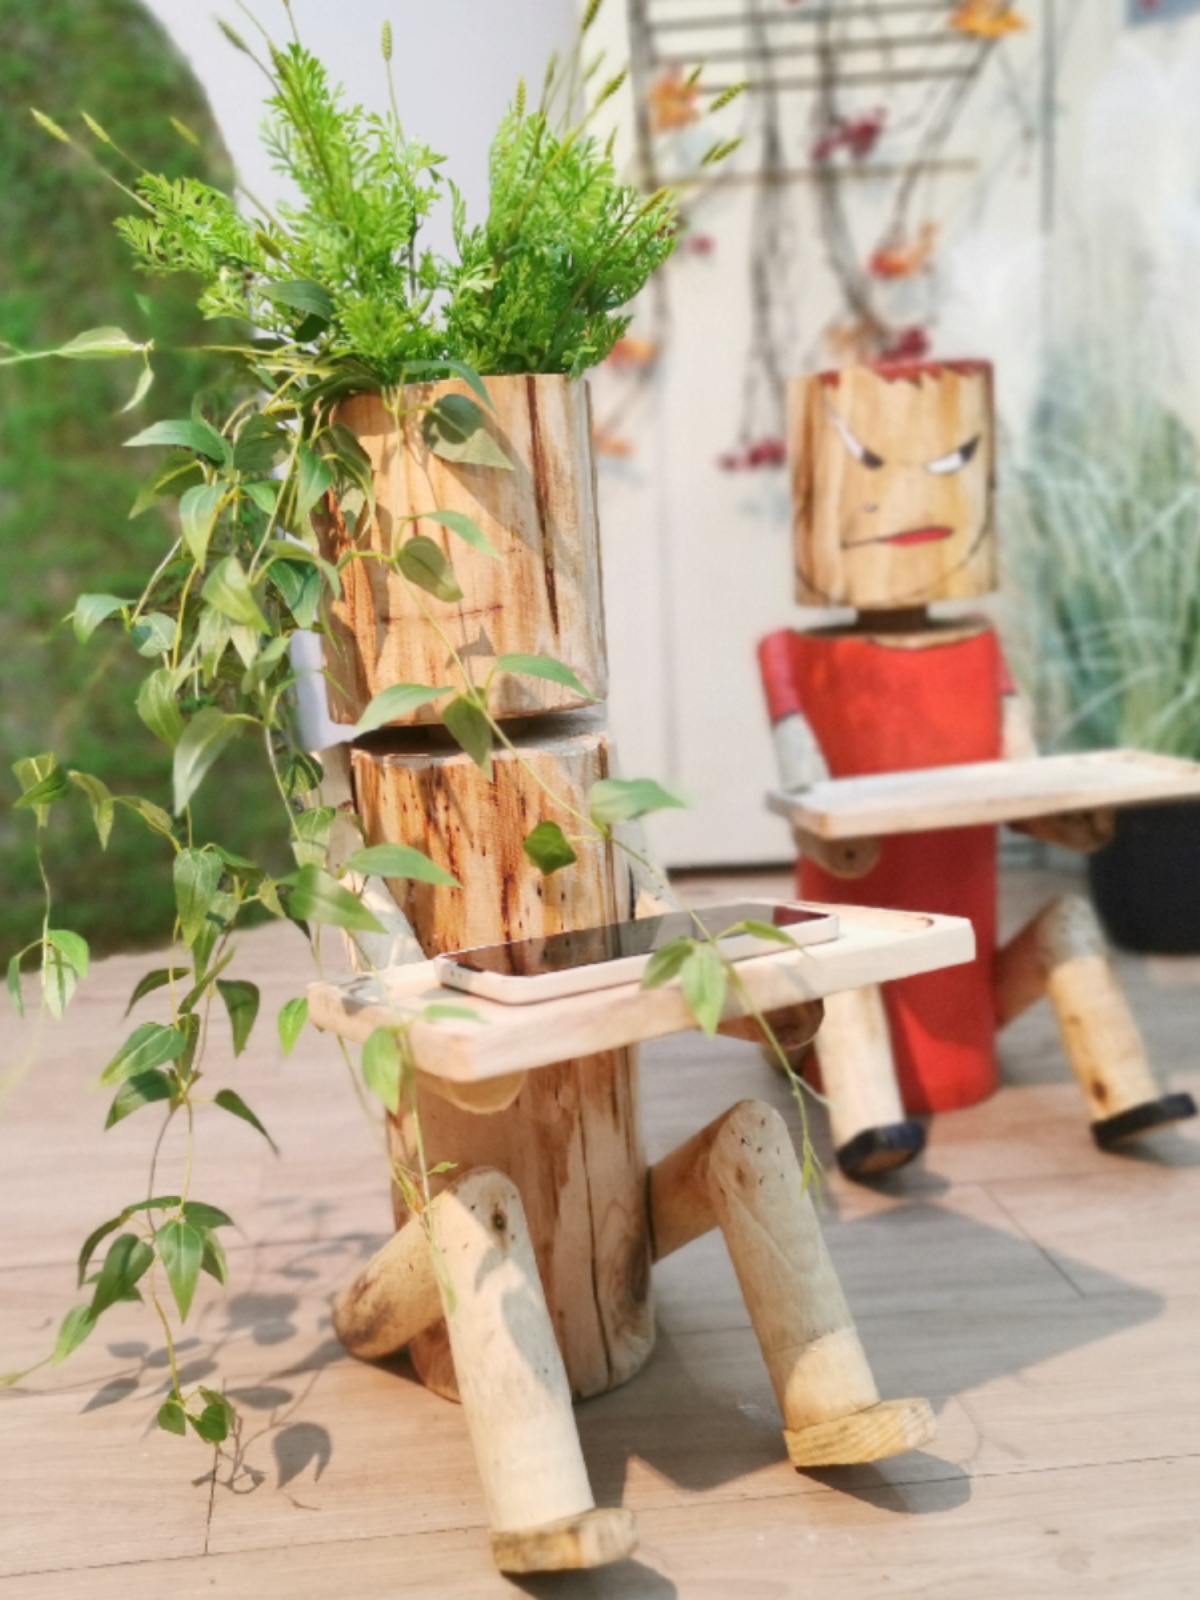 原生态实木小木人涂鸦DIY花盆可爱艺术装饰品幼儿园农场摆件道具